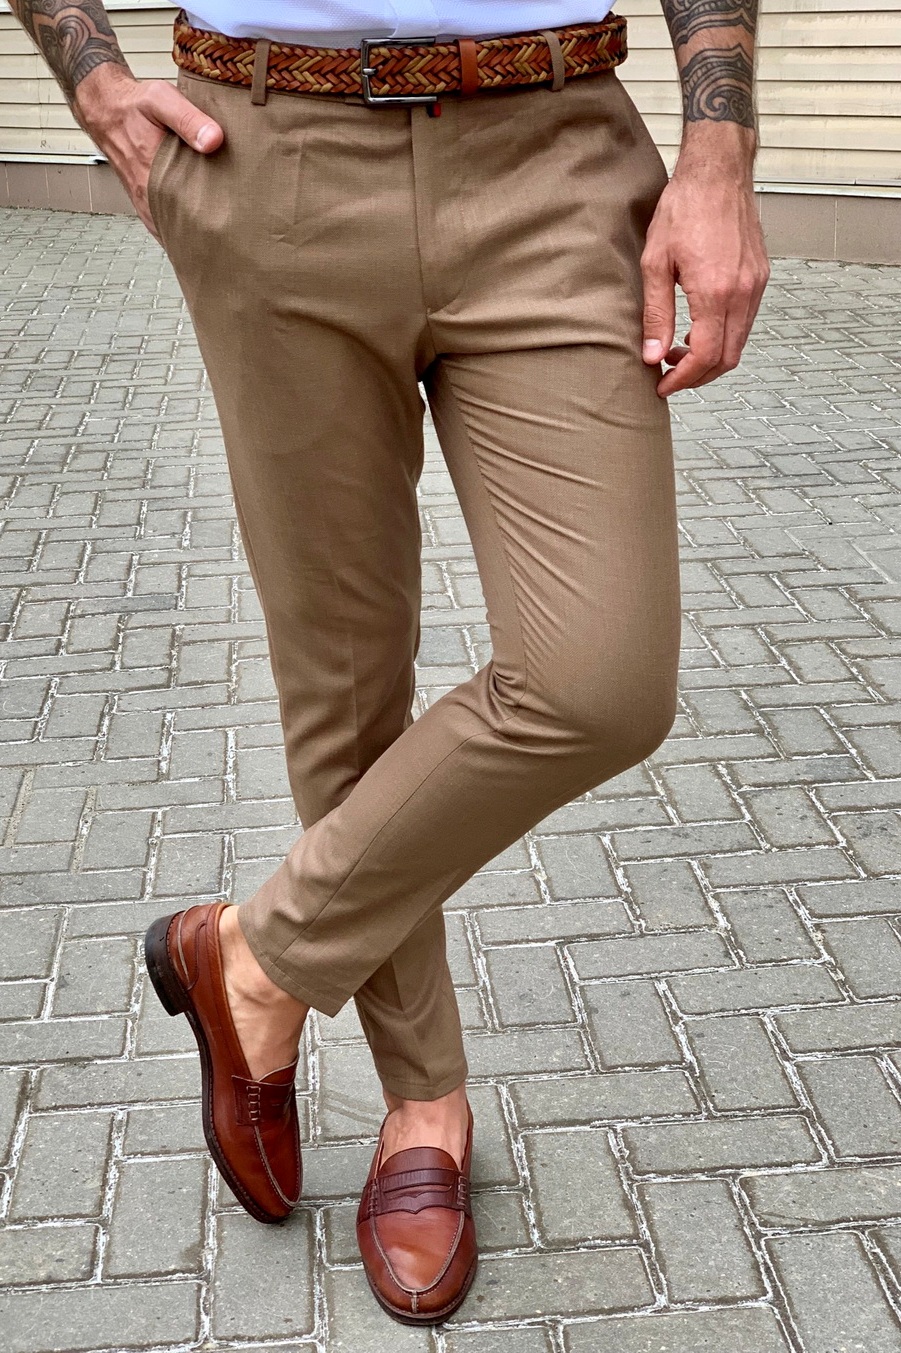 Мужские брюки коричневого цвета. Арт.:6-950-3 – купить в магазине мужскойодежды Smartcasuals